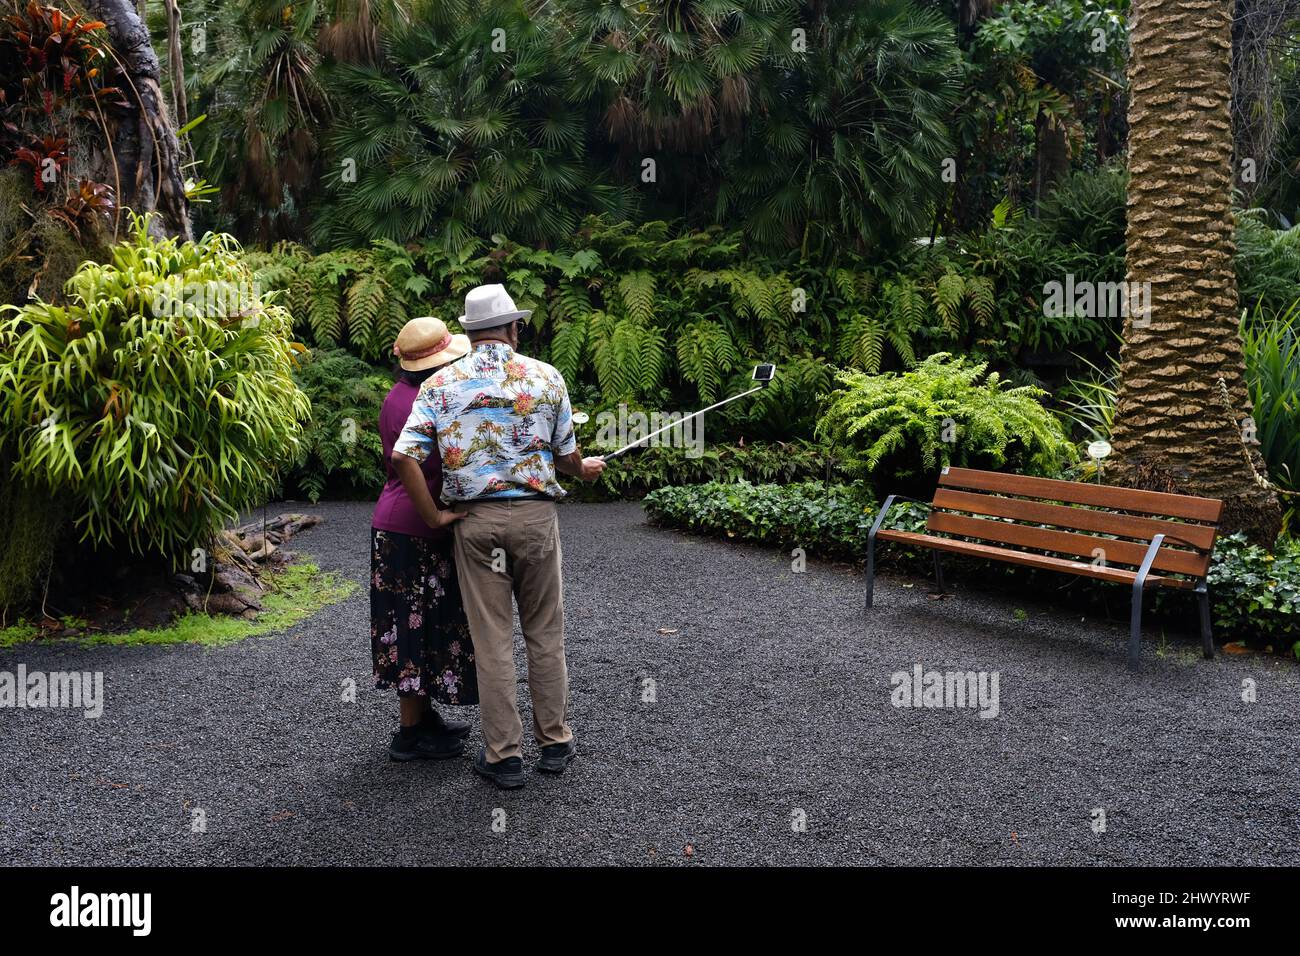 Dos ancianos tomando una selfie en los jardines botánicos de Puerto de la Cruz, Tenerife. Foto de stock